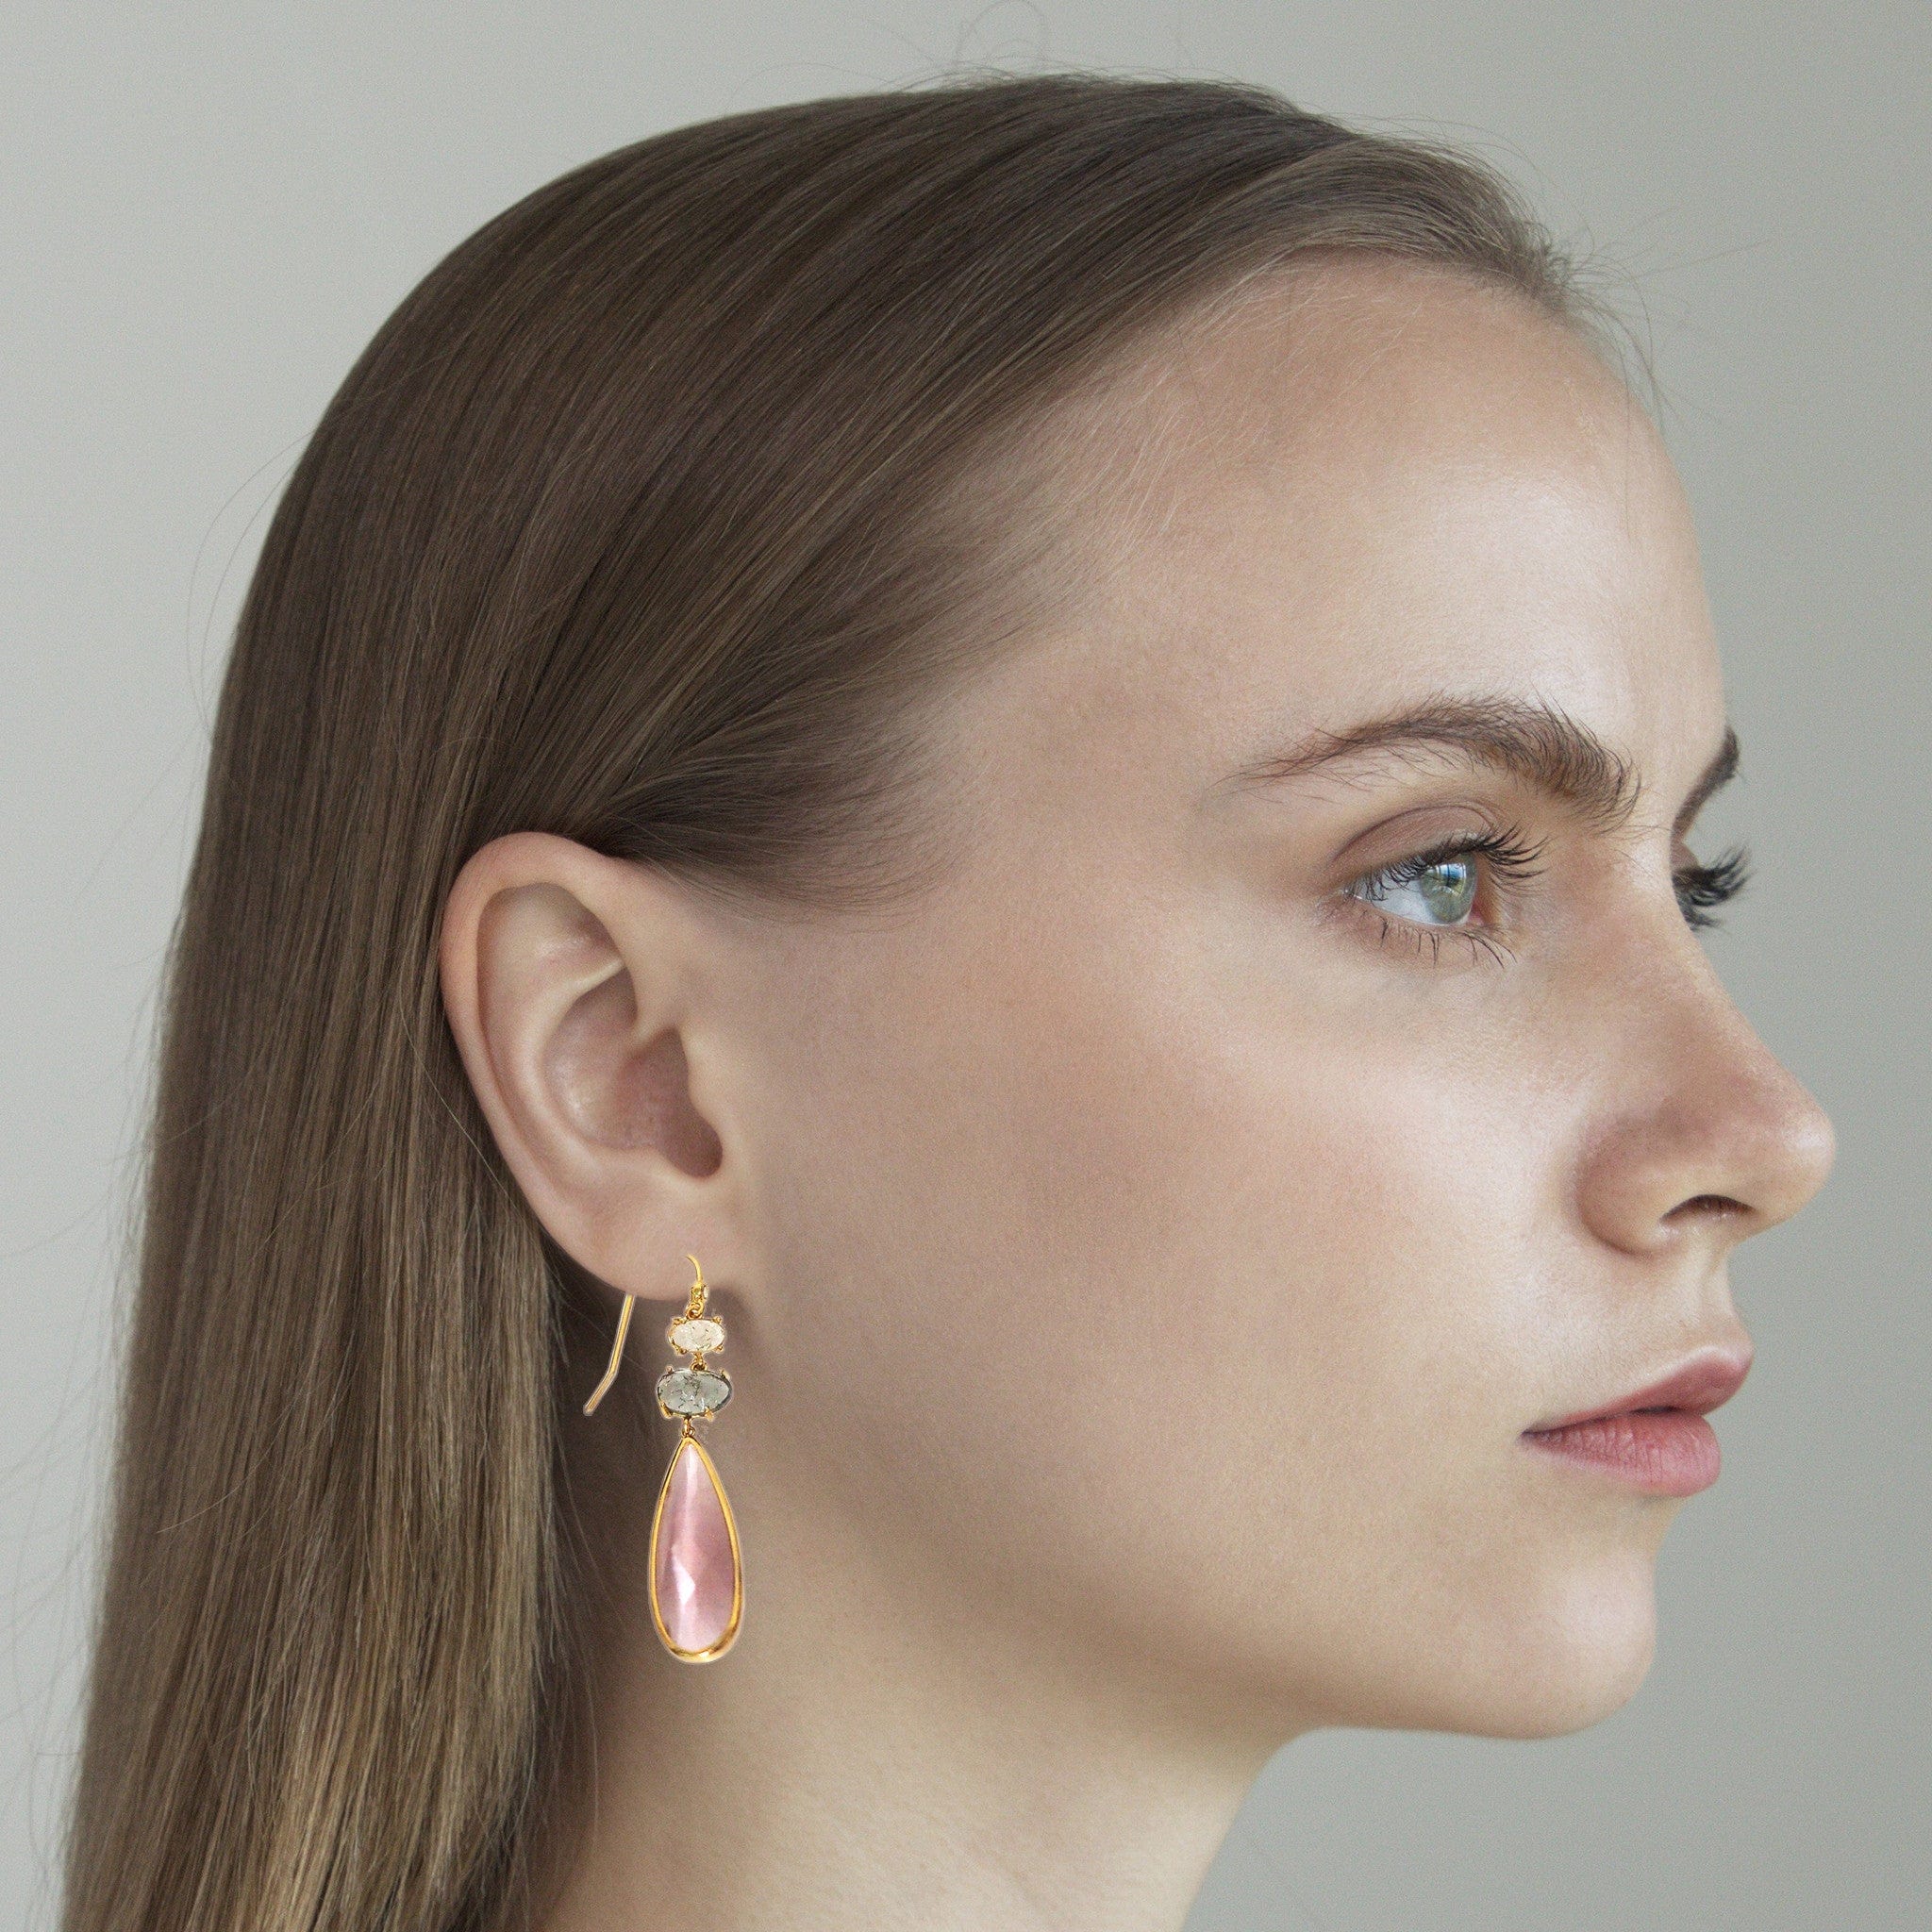 TAI JEWELRY Earrings Triple Stone Tear Drop Earrings